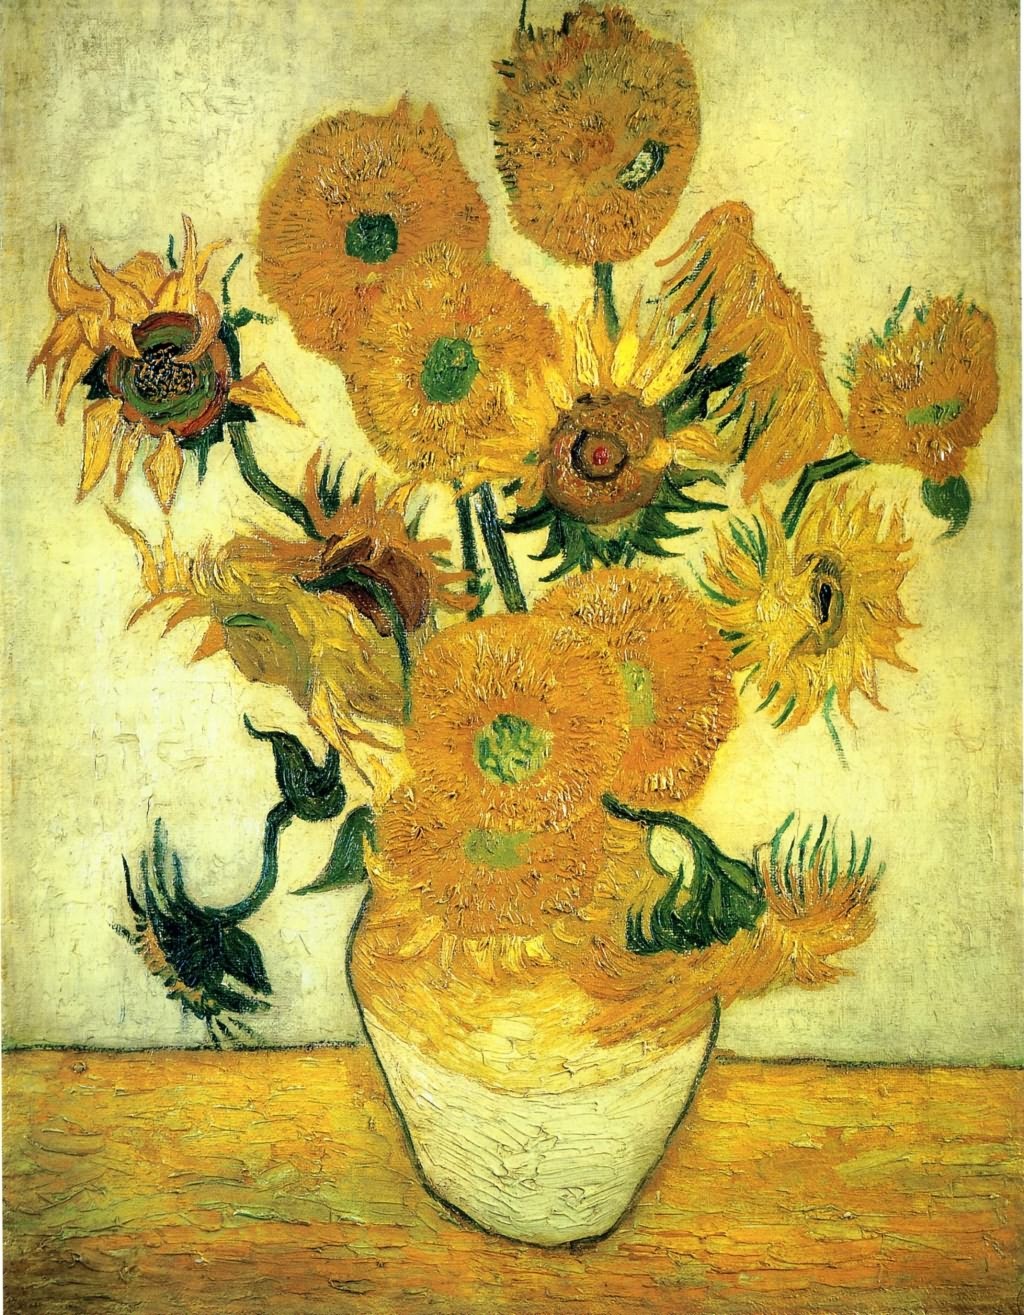 《向日葵》-梵高最著名的画作《向日葵》作品赏析【高清图片】